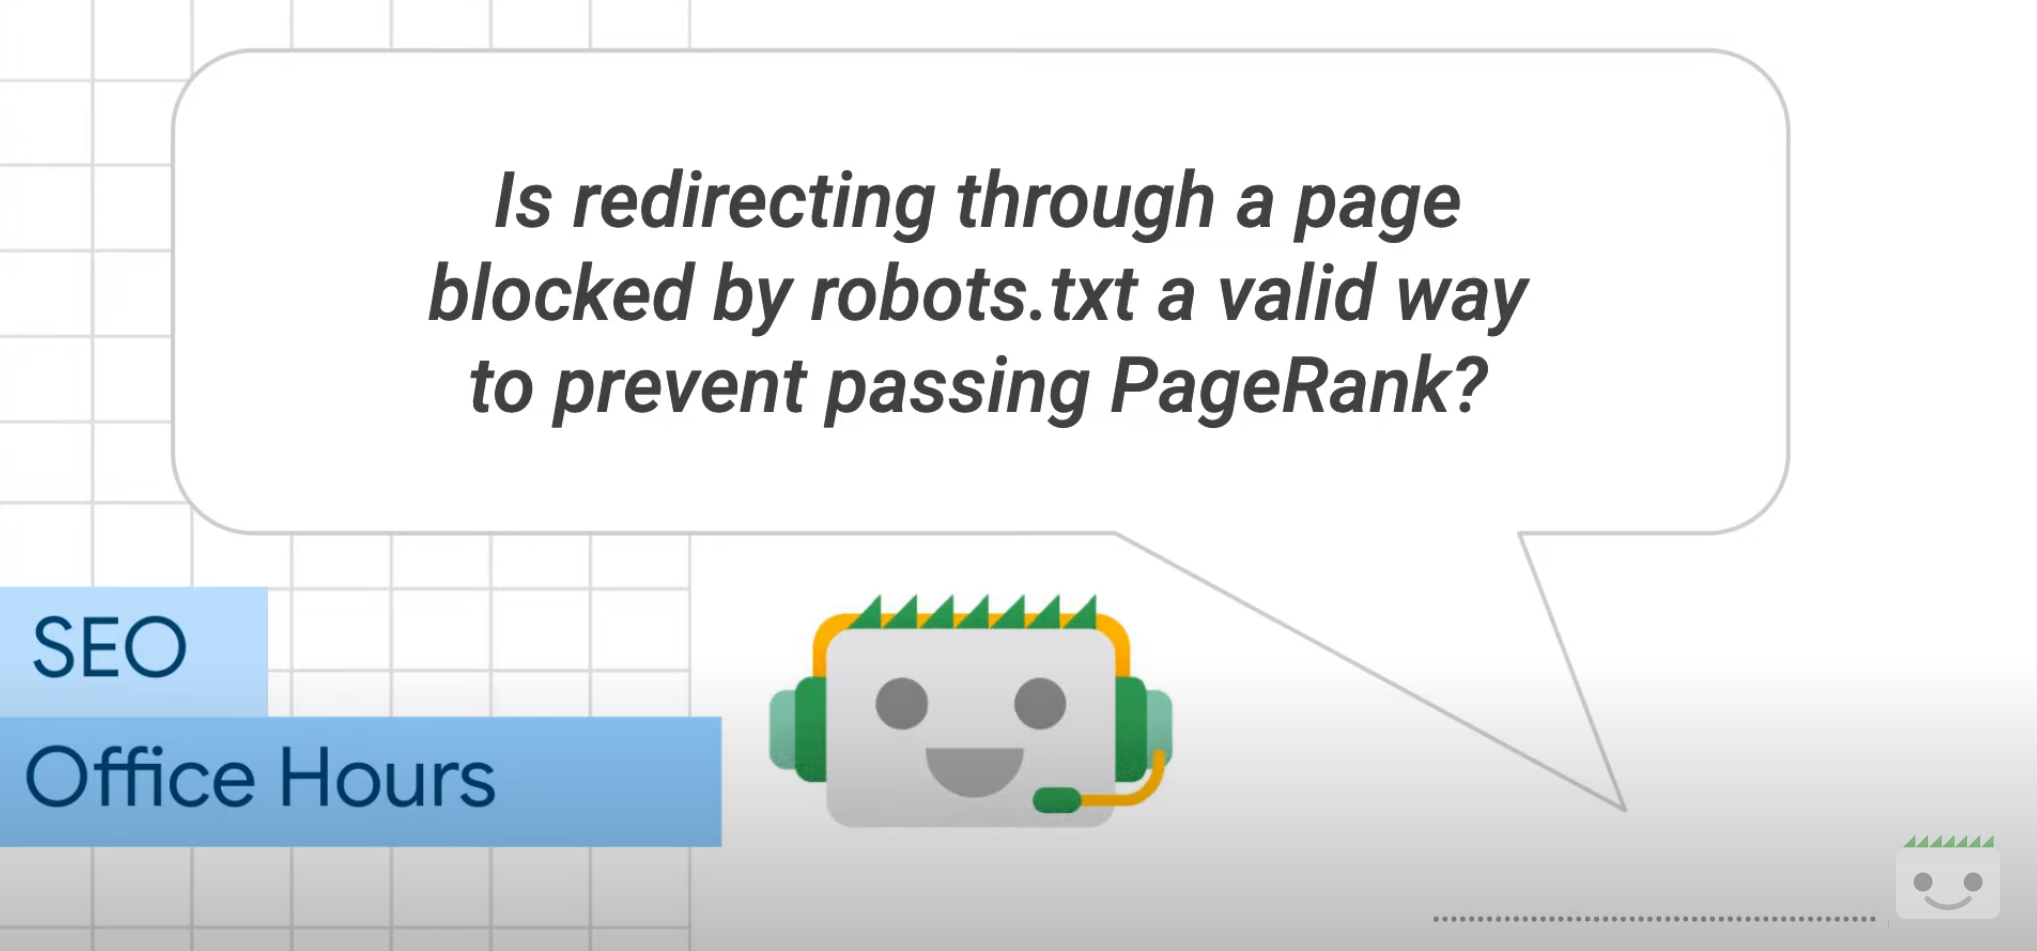 Weiterleitungen über per robots.txt gesperrte Seiten blockieren das Übertragen von Rankingsignalen